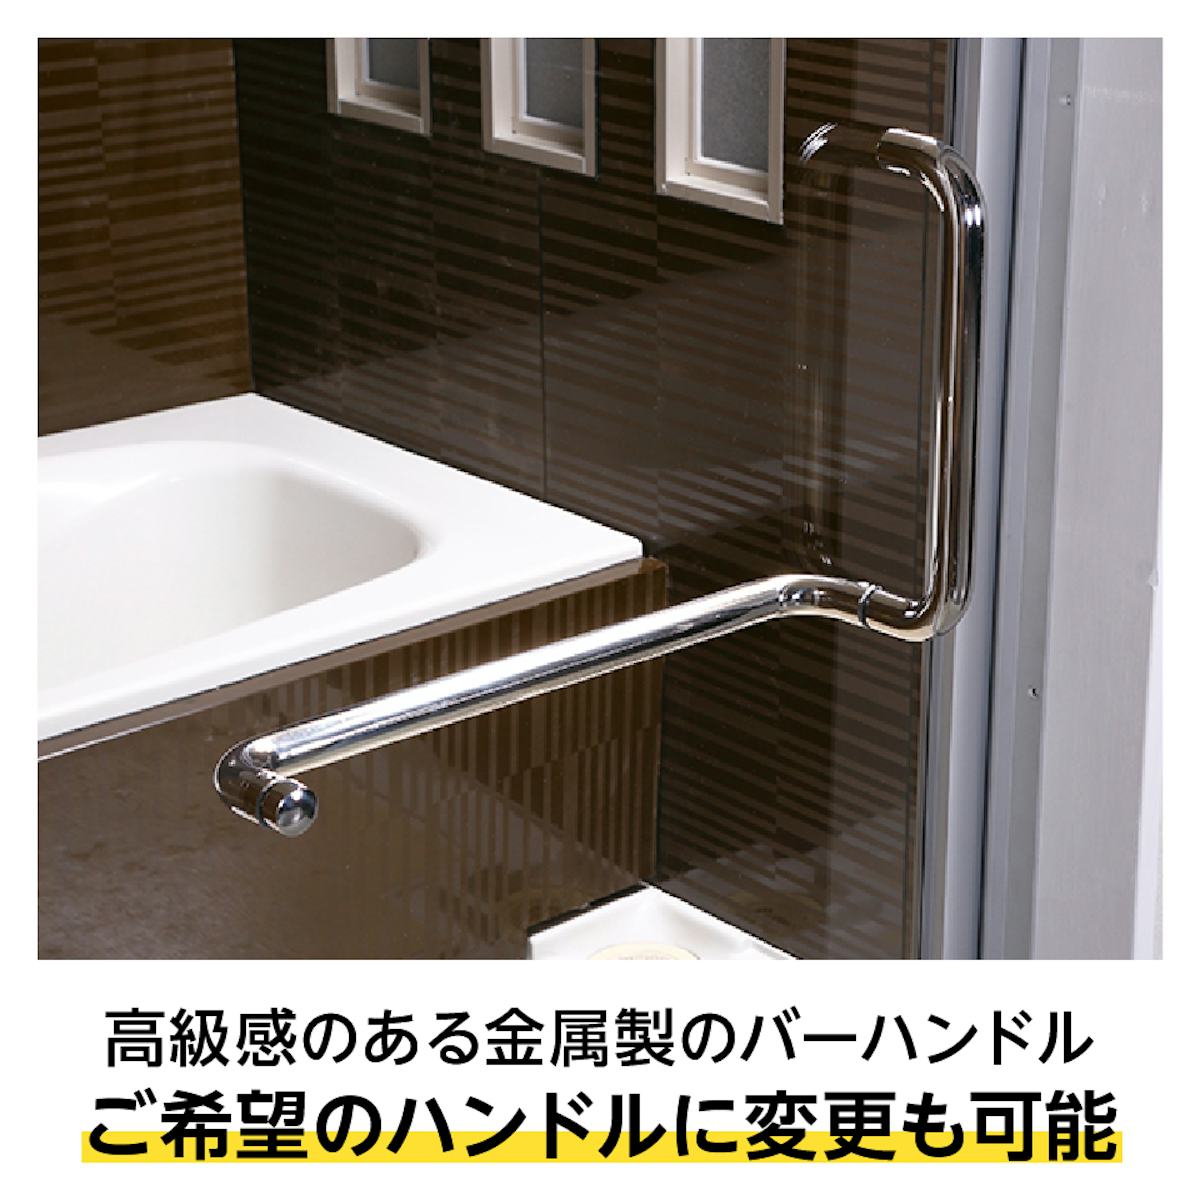 「アルミ框・枠付き強化ガラスドア」は、バスタオルを掛けられる浴室専用バーハンドル付き